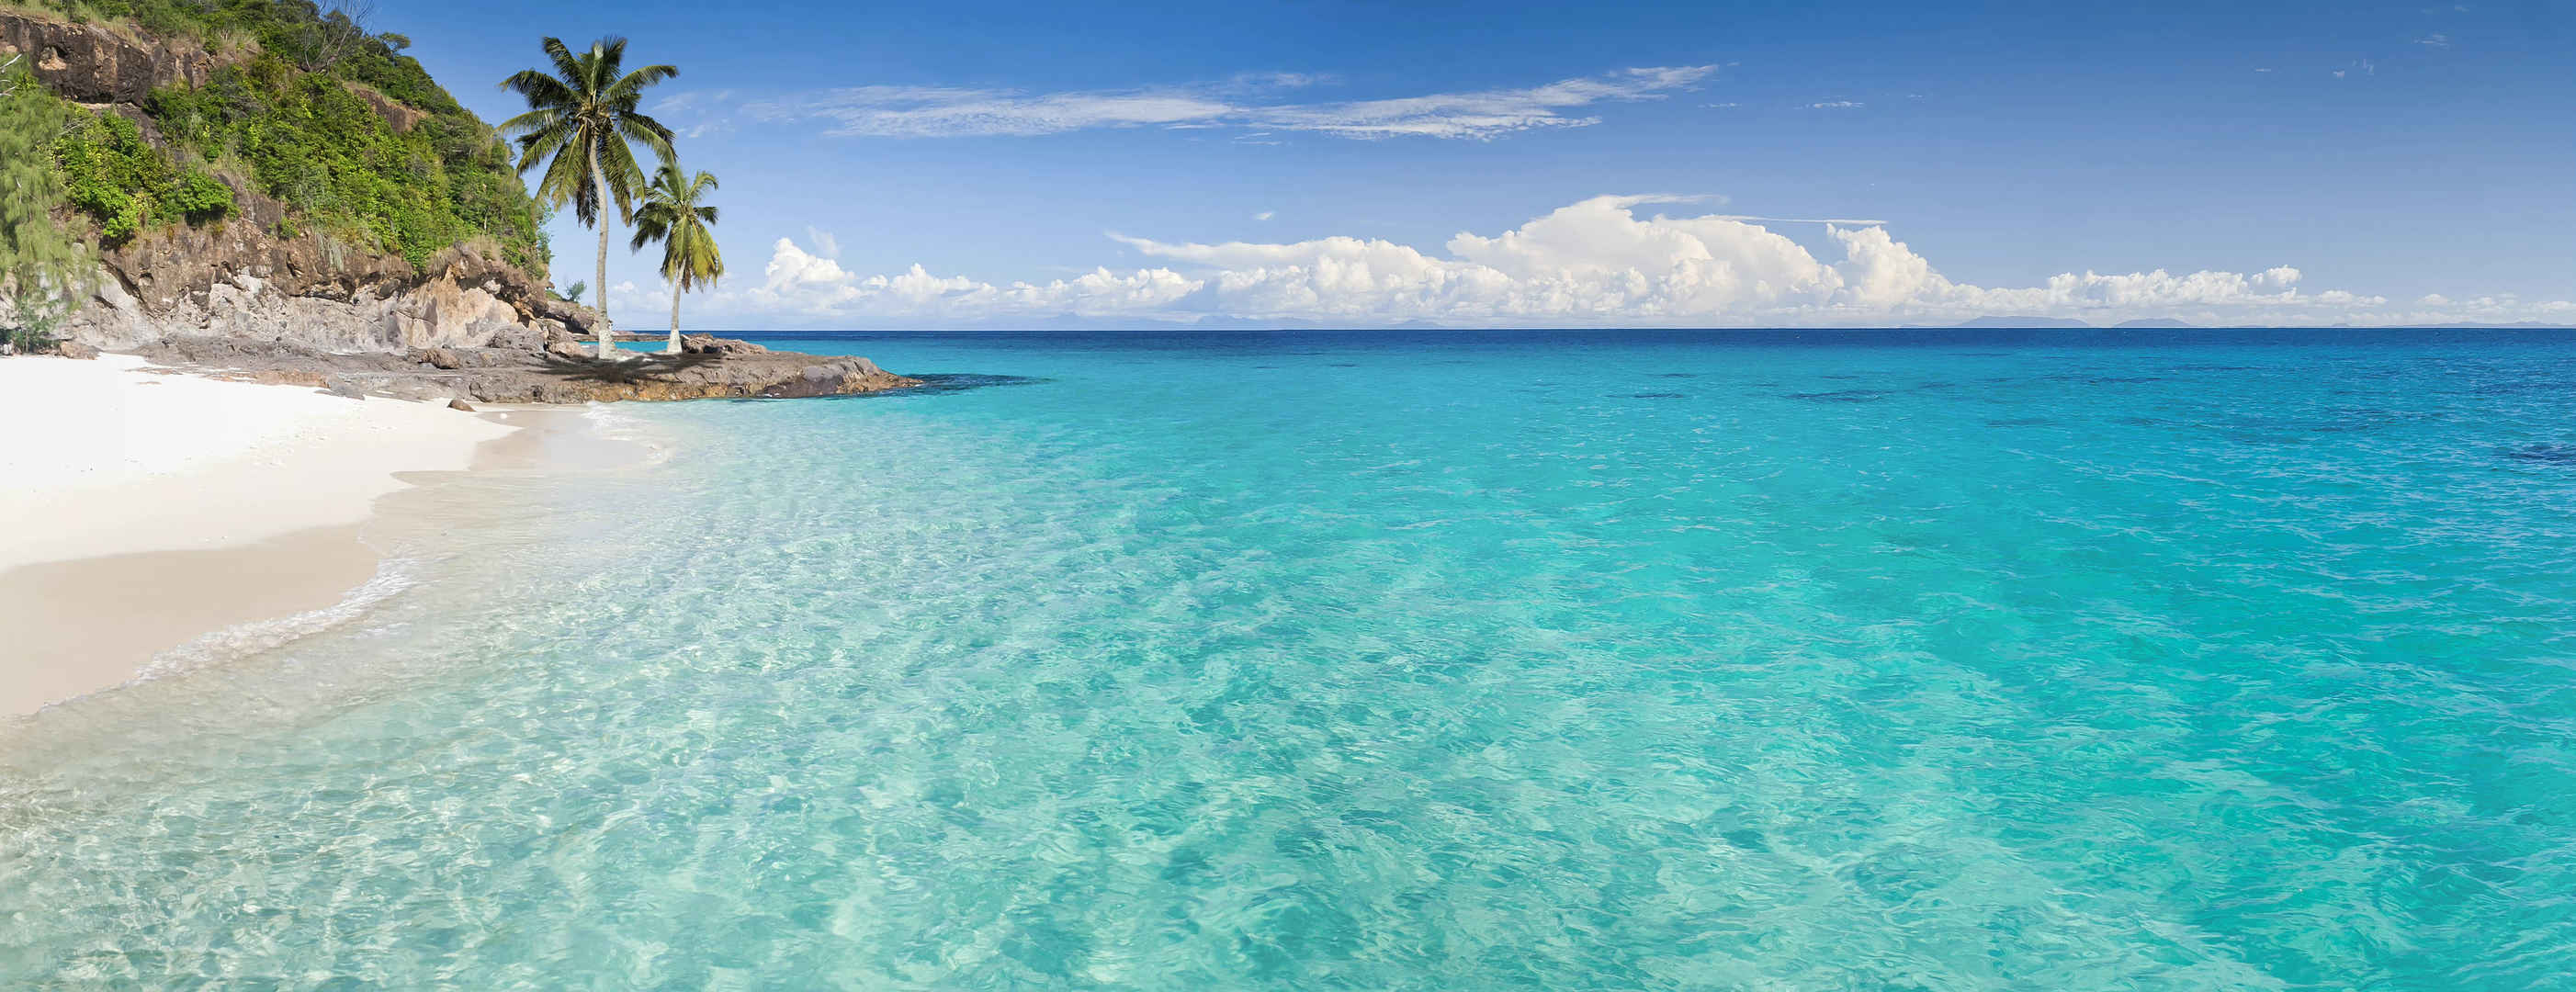 大海岛屿透明海水风景图-